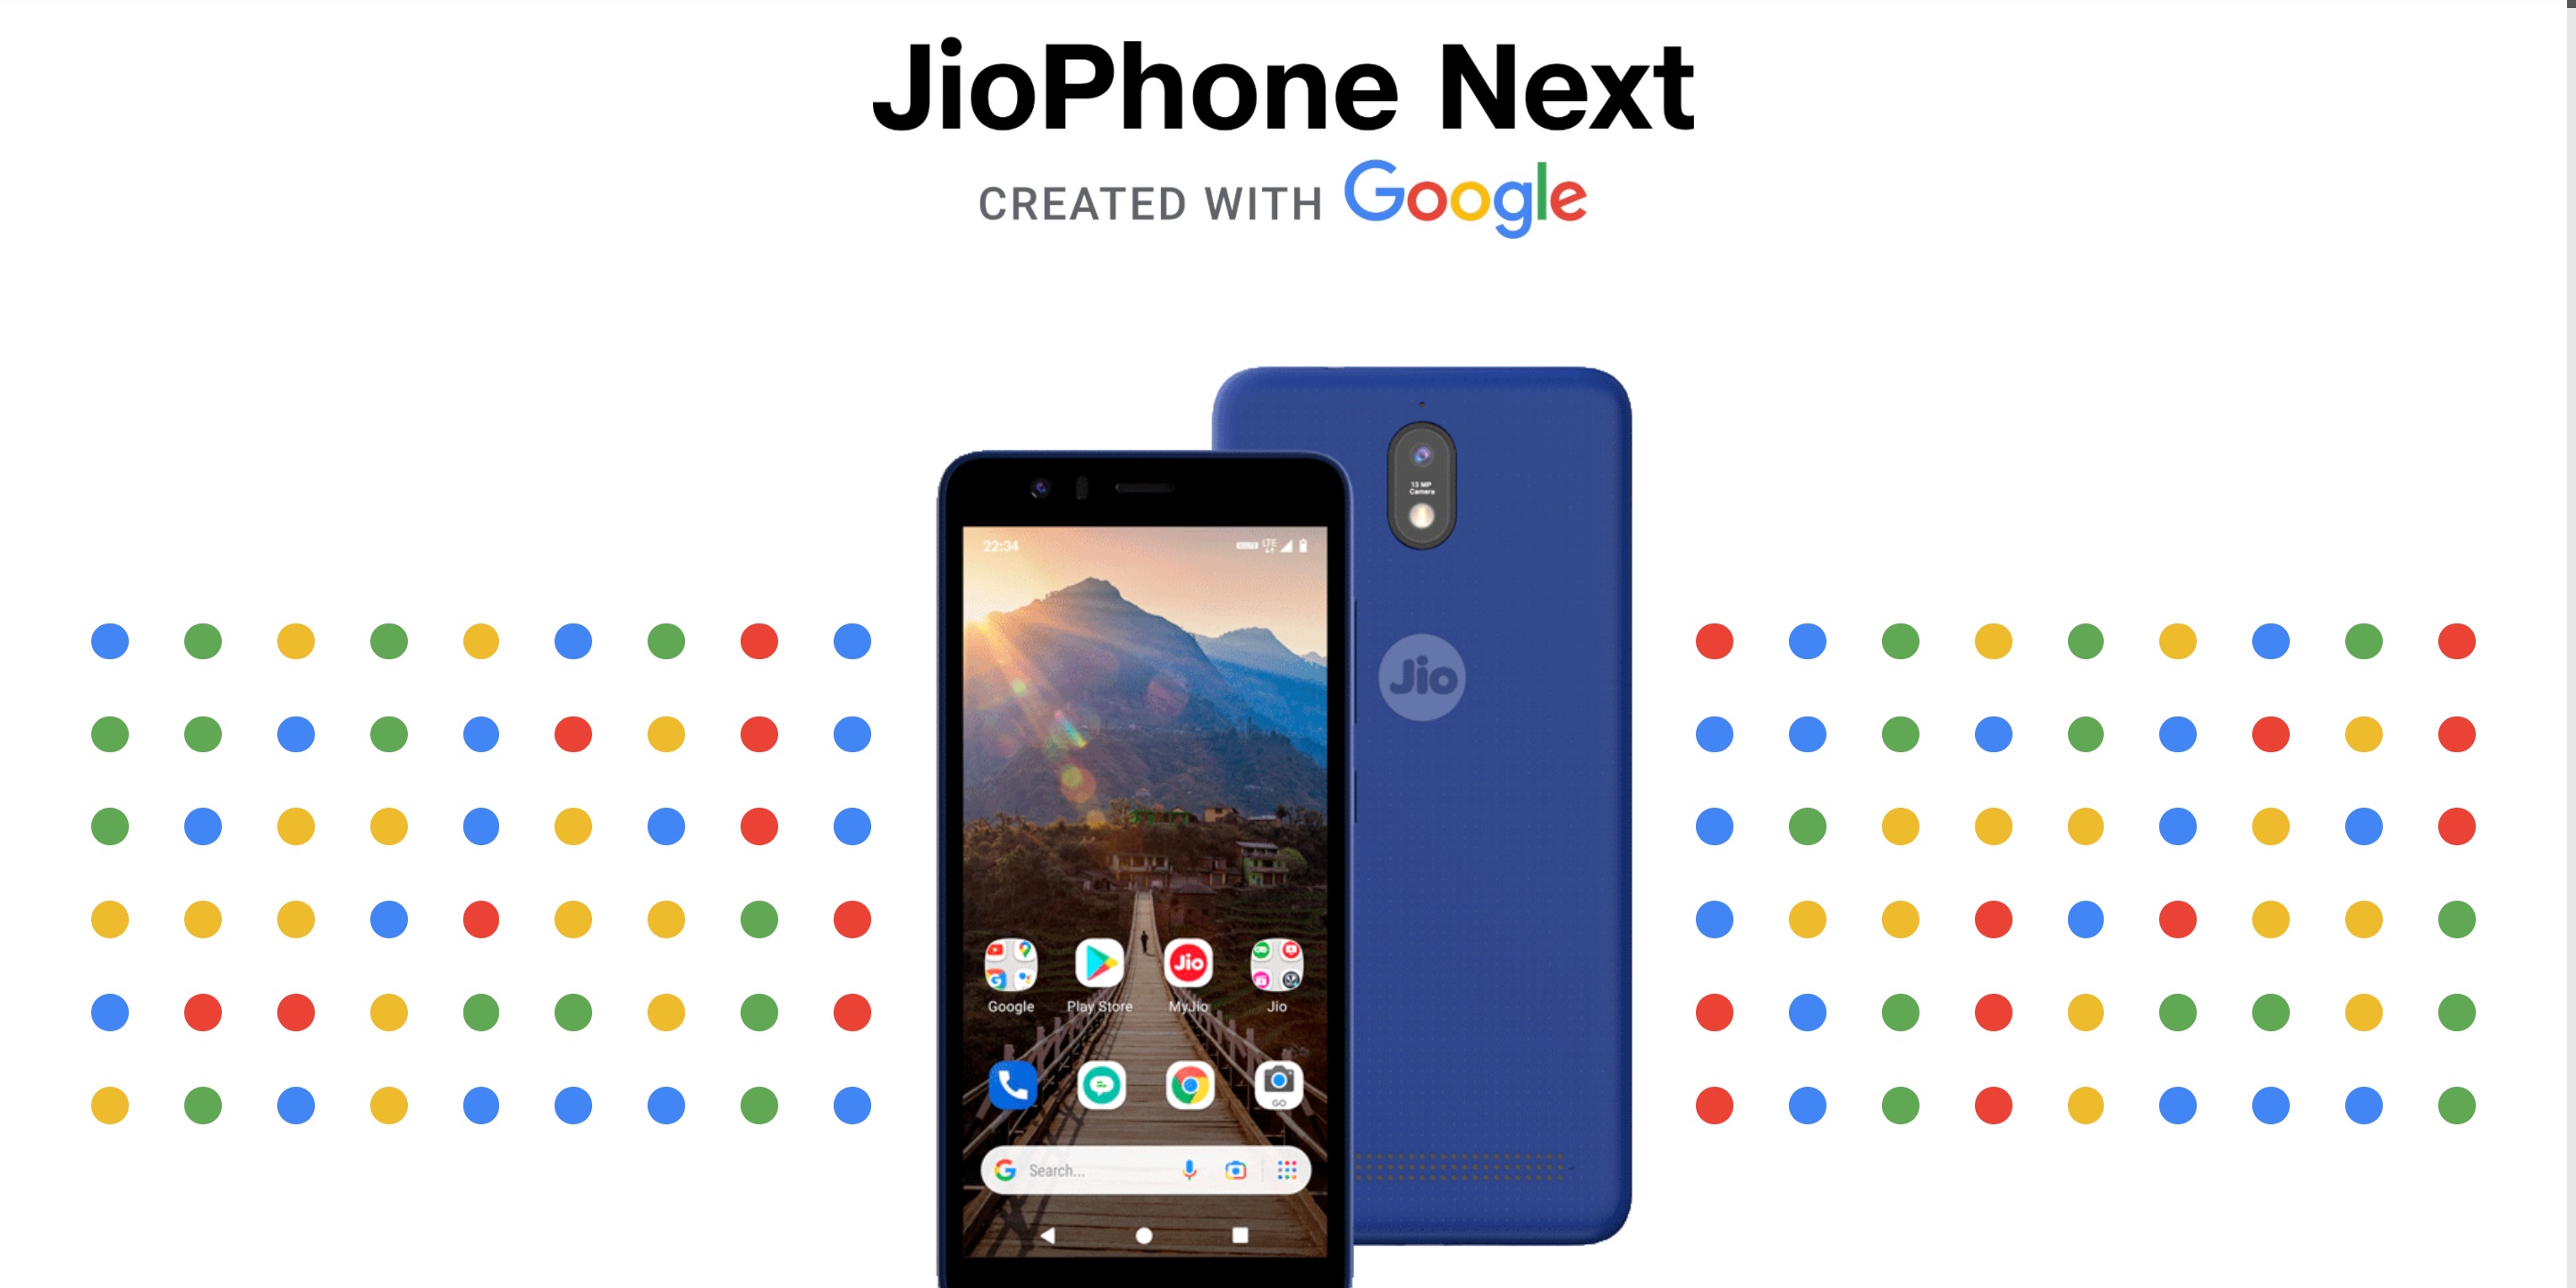 Il prezzo dello "smartphone 4G più economico del mondo" JioPhone Next, sviluppato in collaborazione con Google, è stato finalmente annunciato